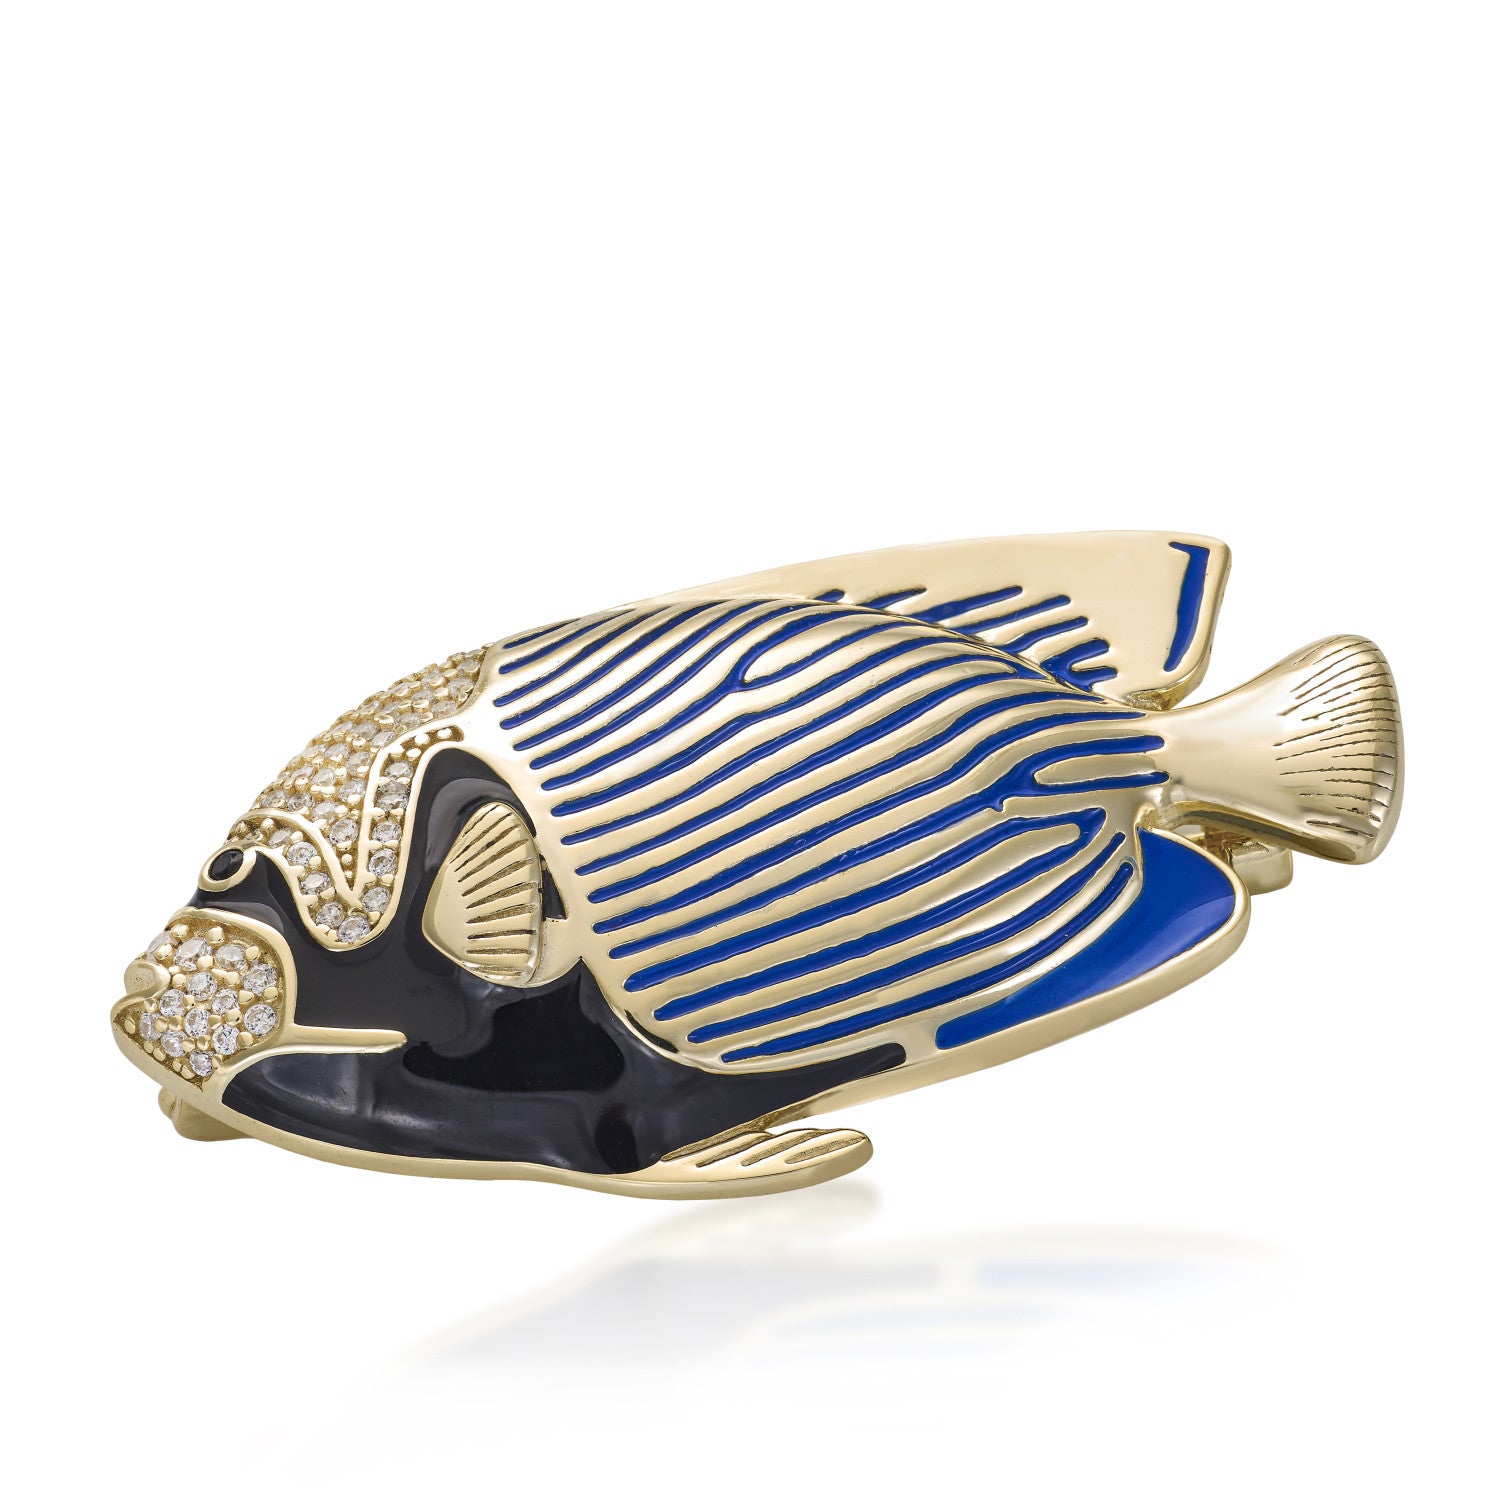 Broche · Broche de plata con baño dorado diseño pez